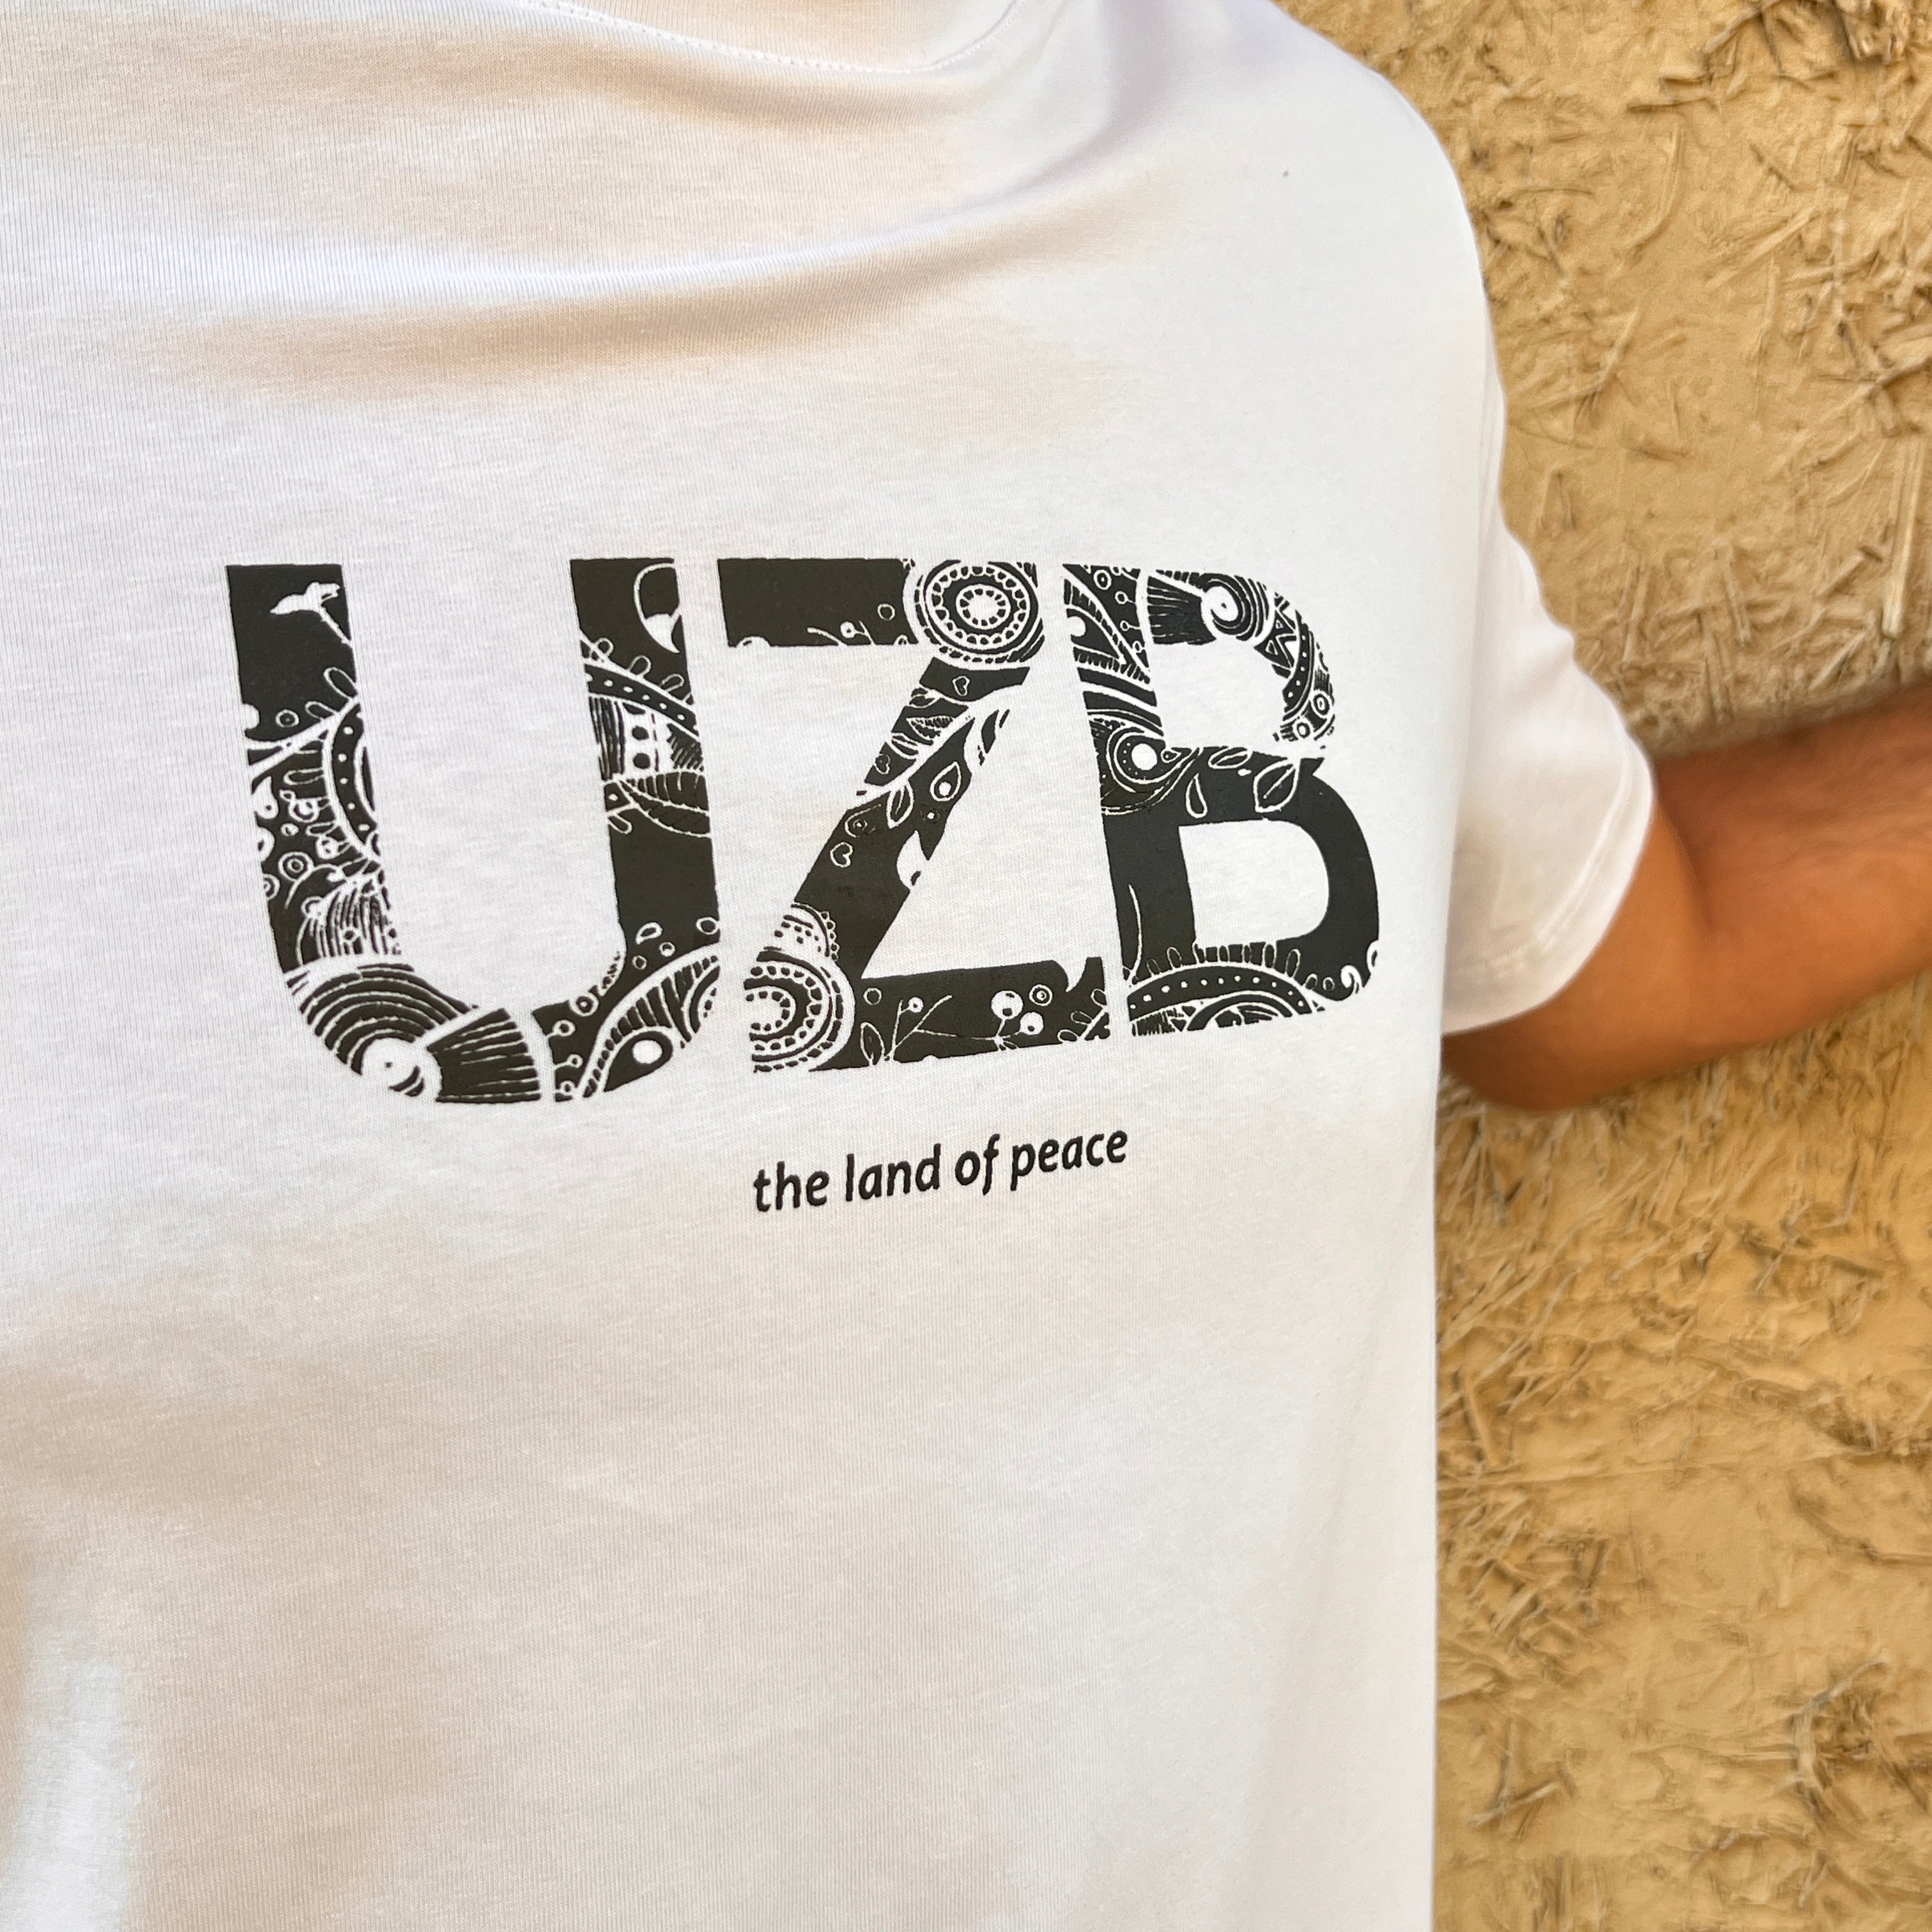 T-shirt UZB